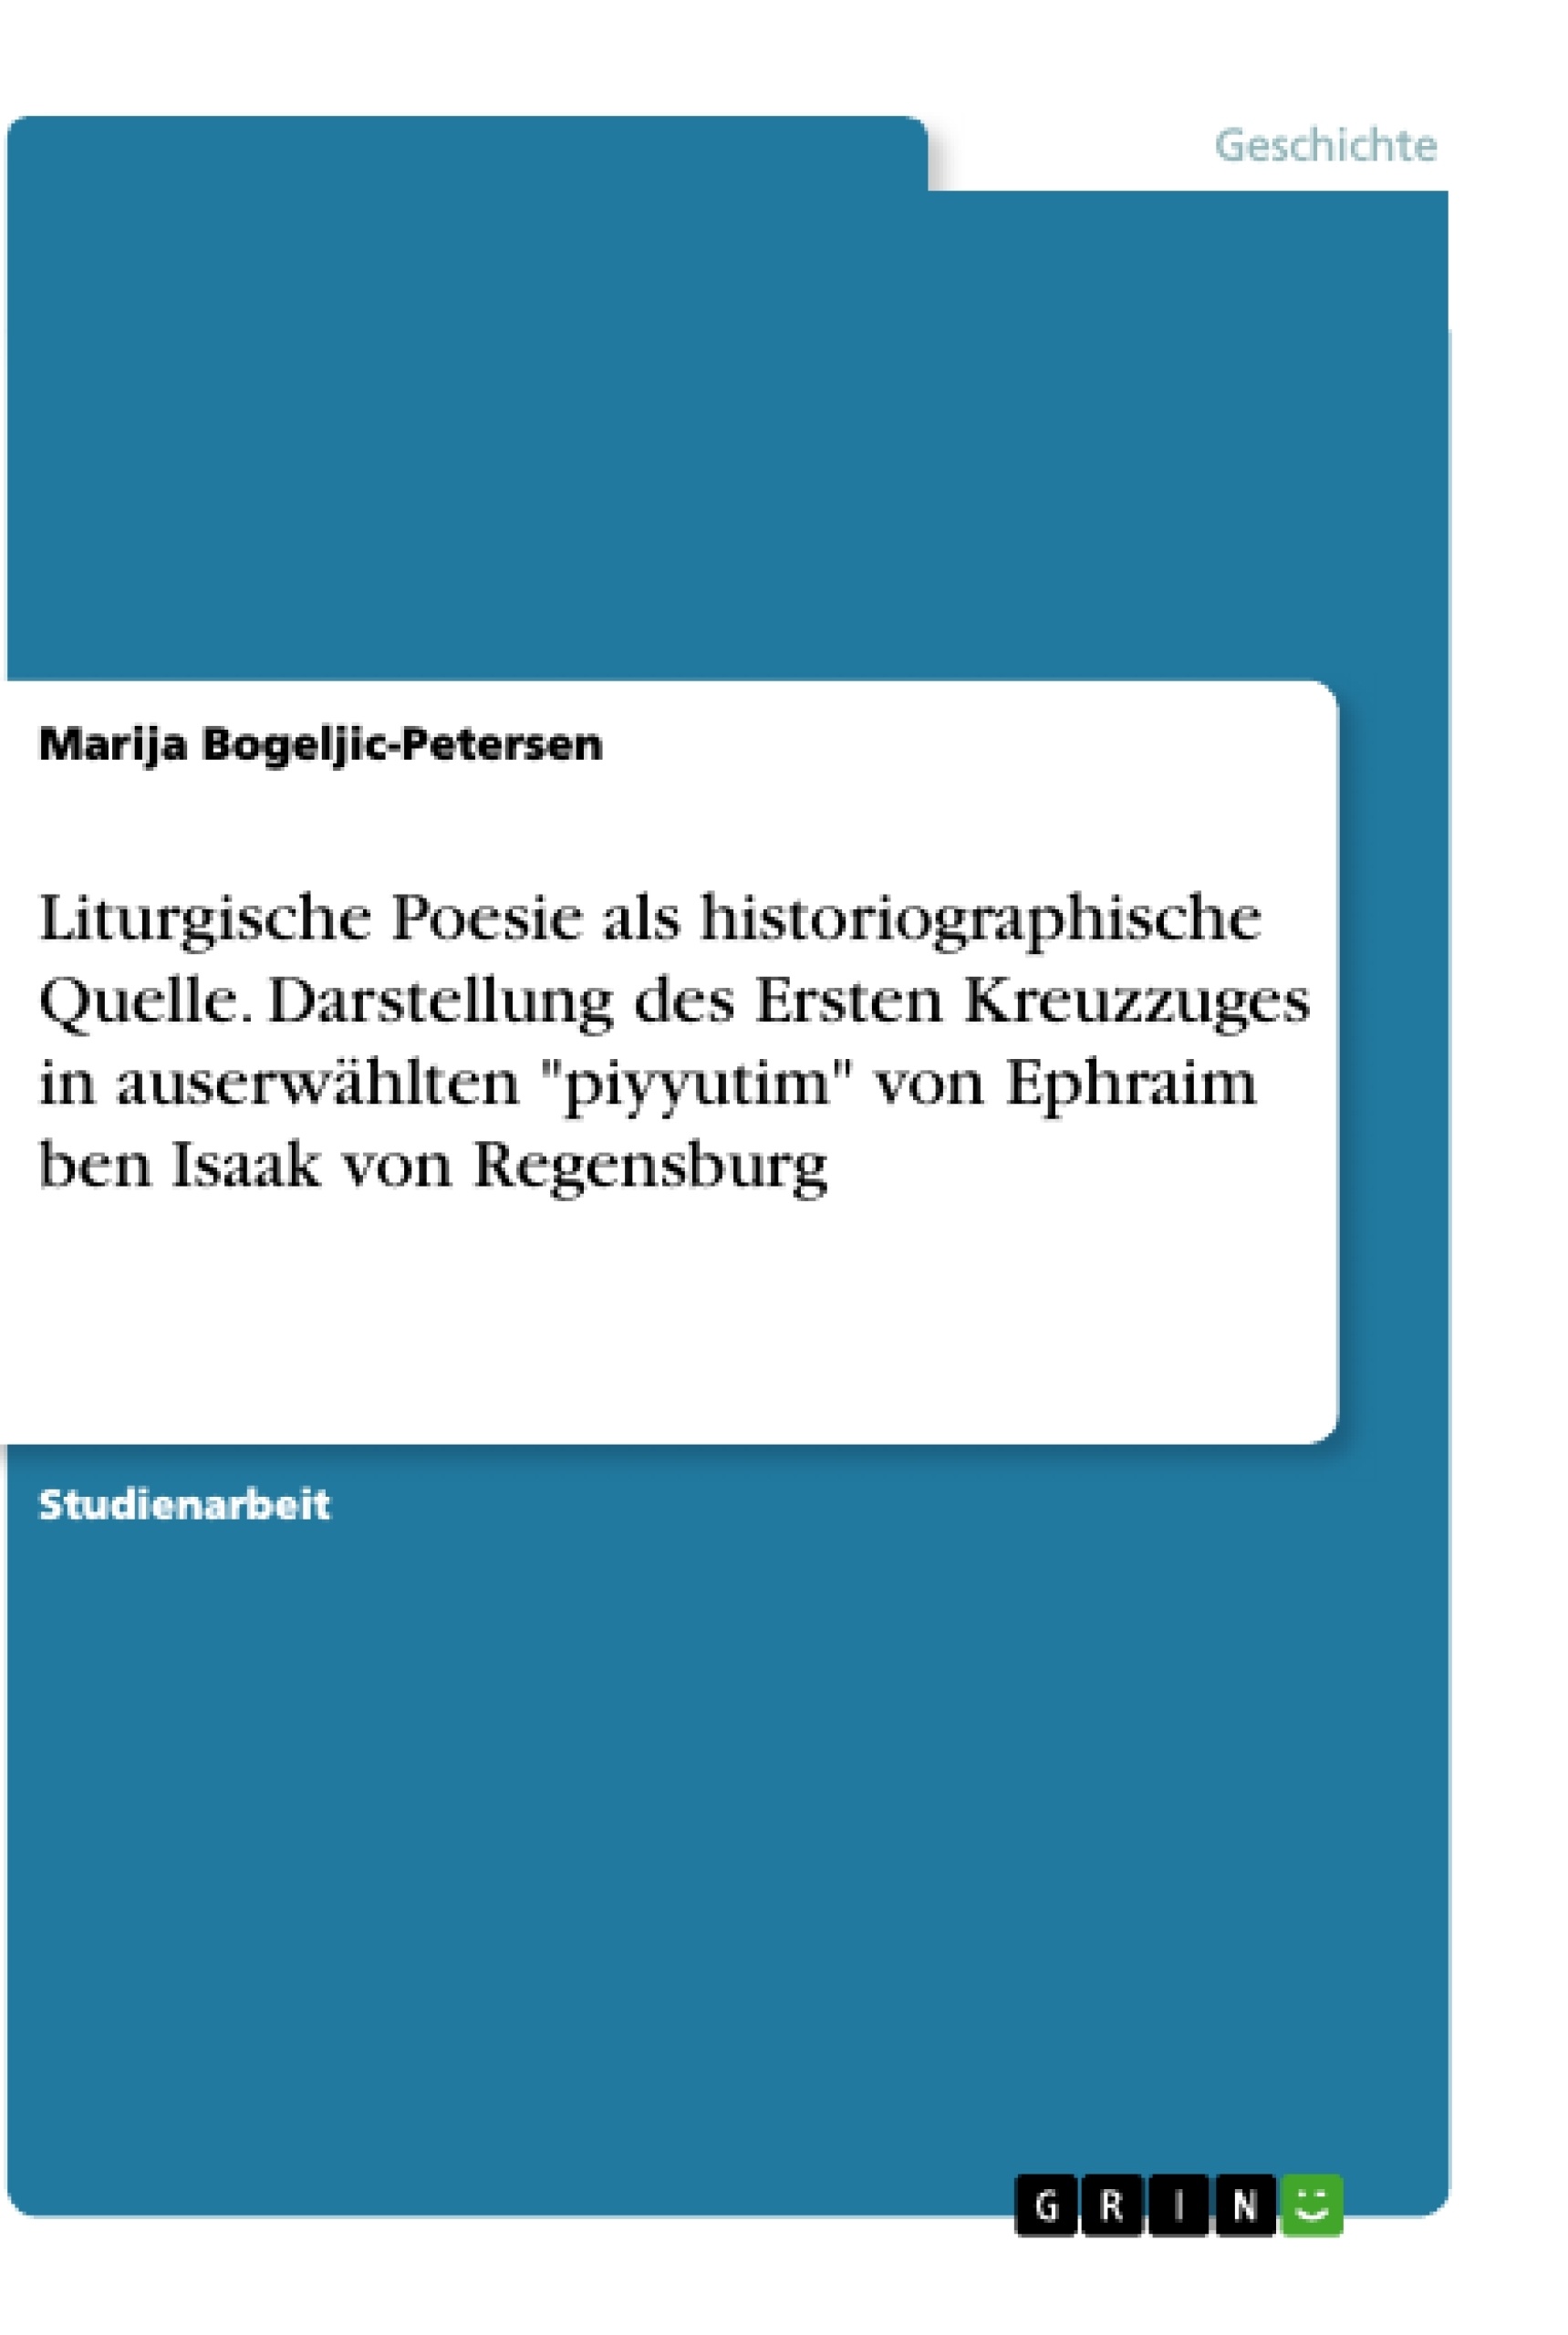 Title: Liturgische Poesie als historiographische Quelle. Darstellung des Ersten Kreuzzuges in auserwählten "piyyutim" von Ephraim ben Isaak von Regensburg